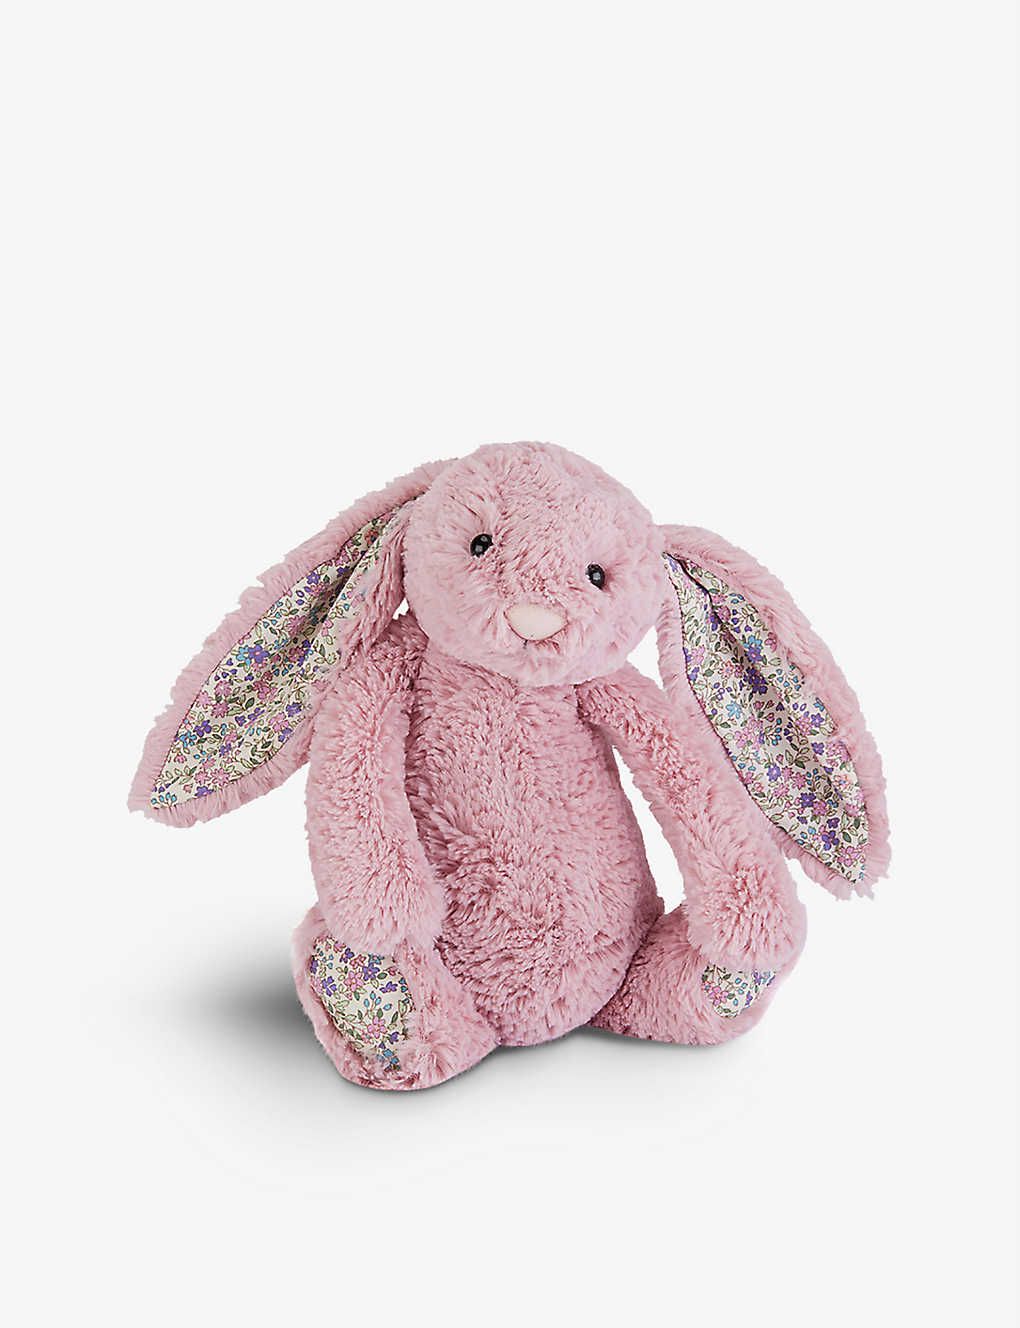 Bashful Bunny large soft toy 36cm | Selfridges